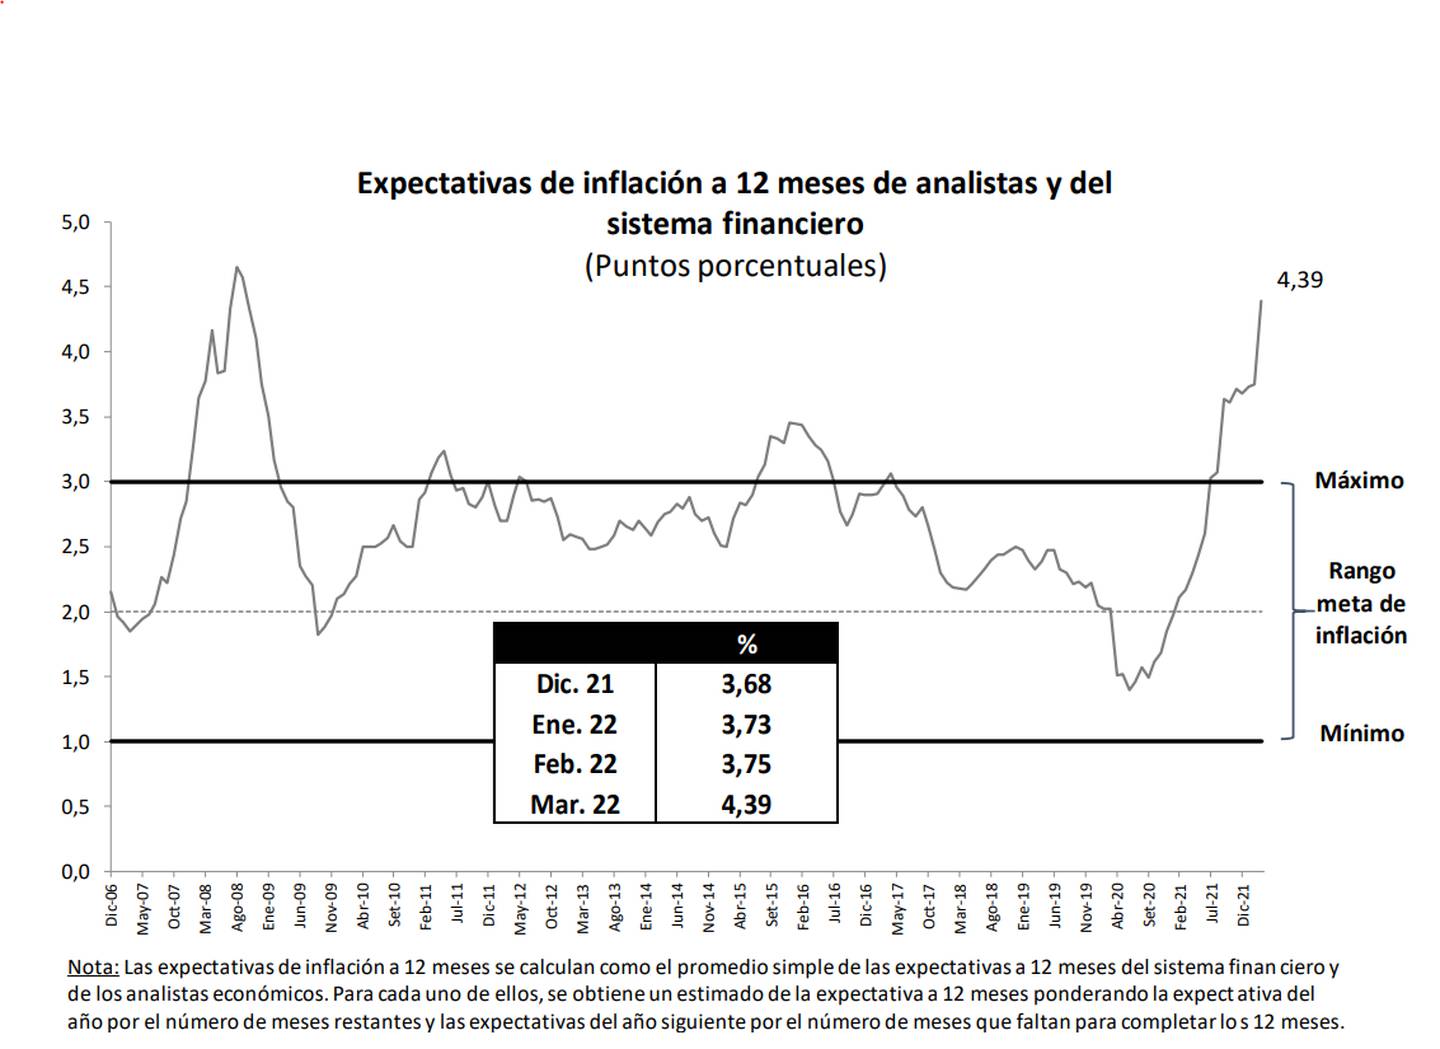 Expectativas de inflación a 12 meses de analistas y del sistema financiero.dfd